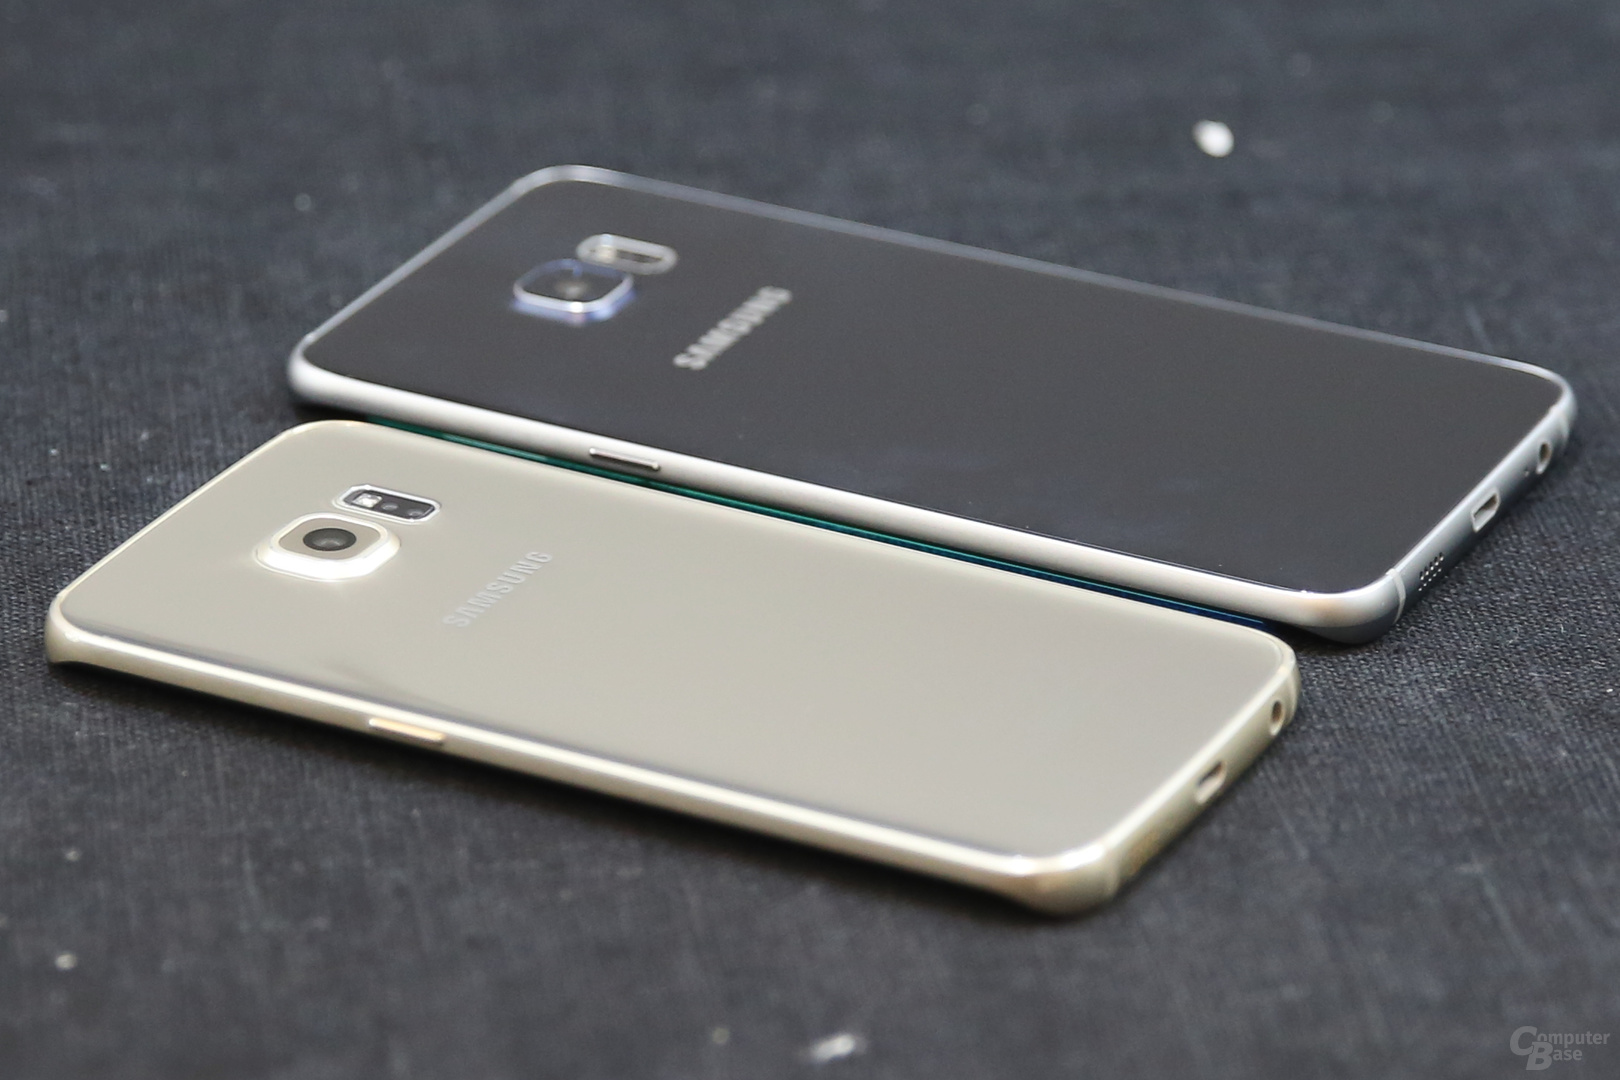 Galaxy S6 edge im Vordergrund, Galaxy S6 edge+ im Hintergrund